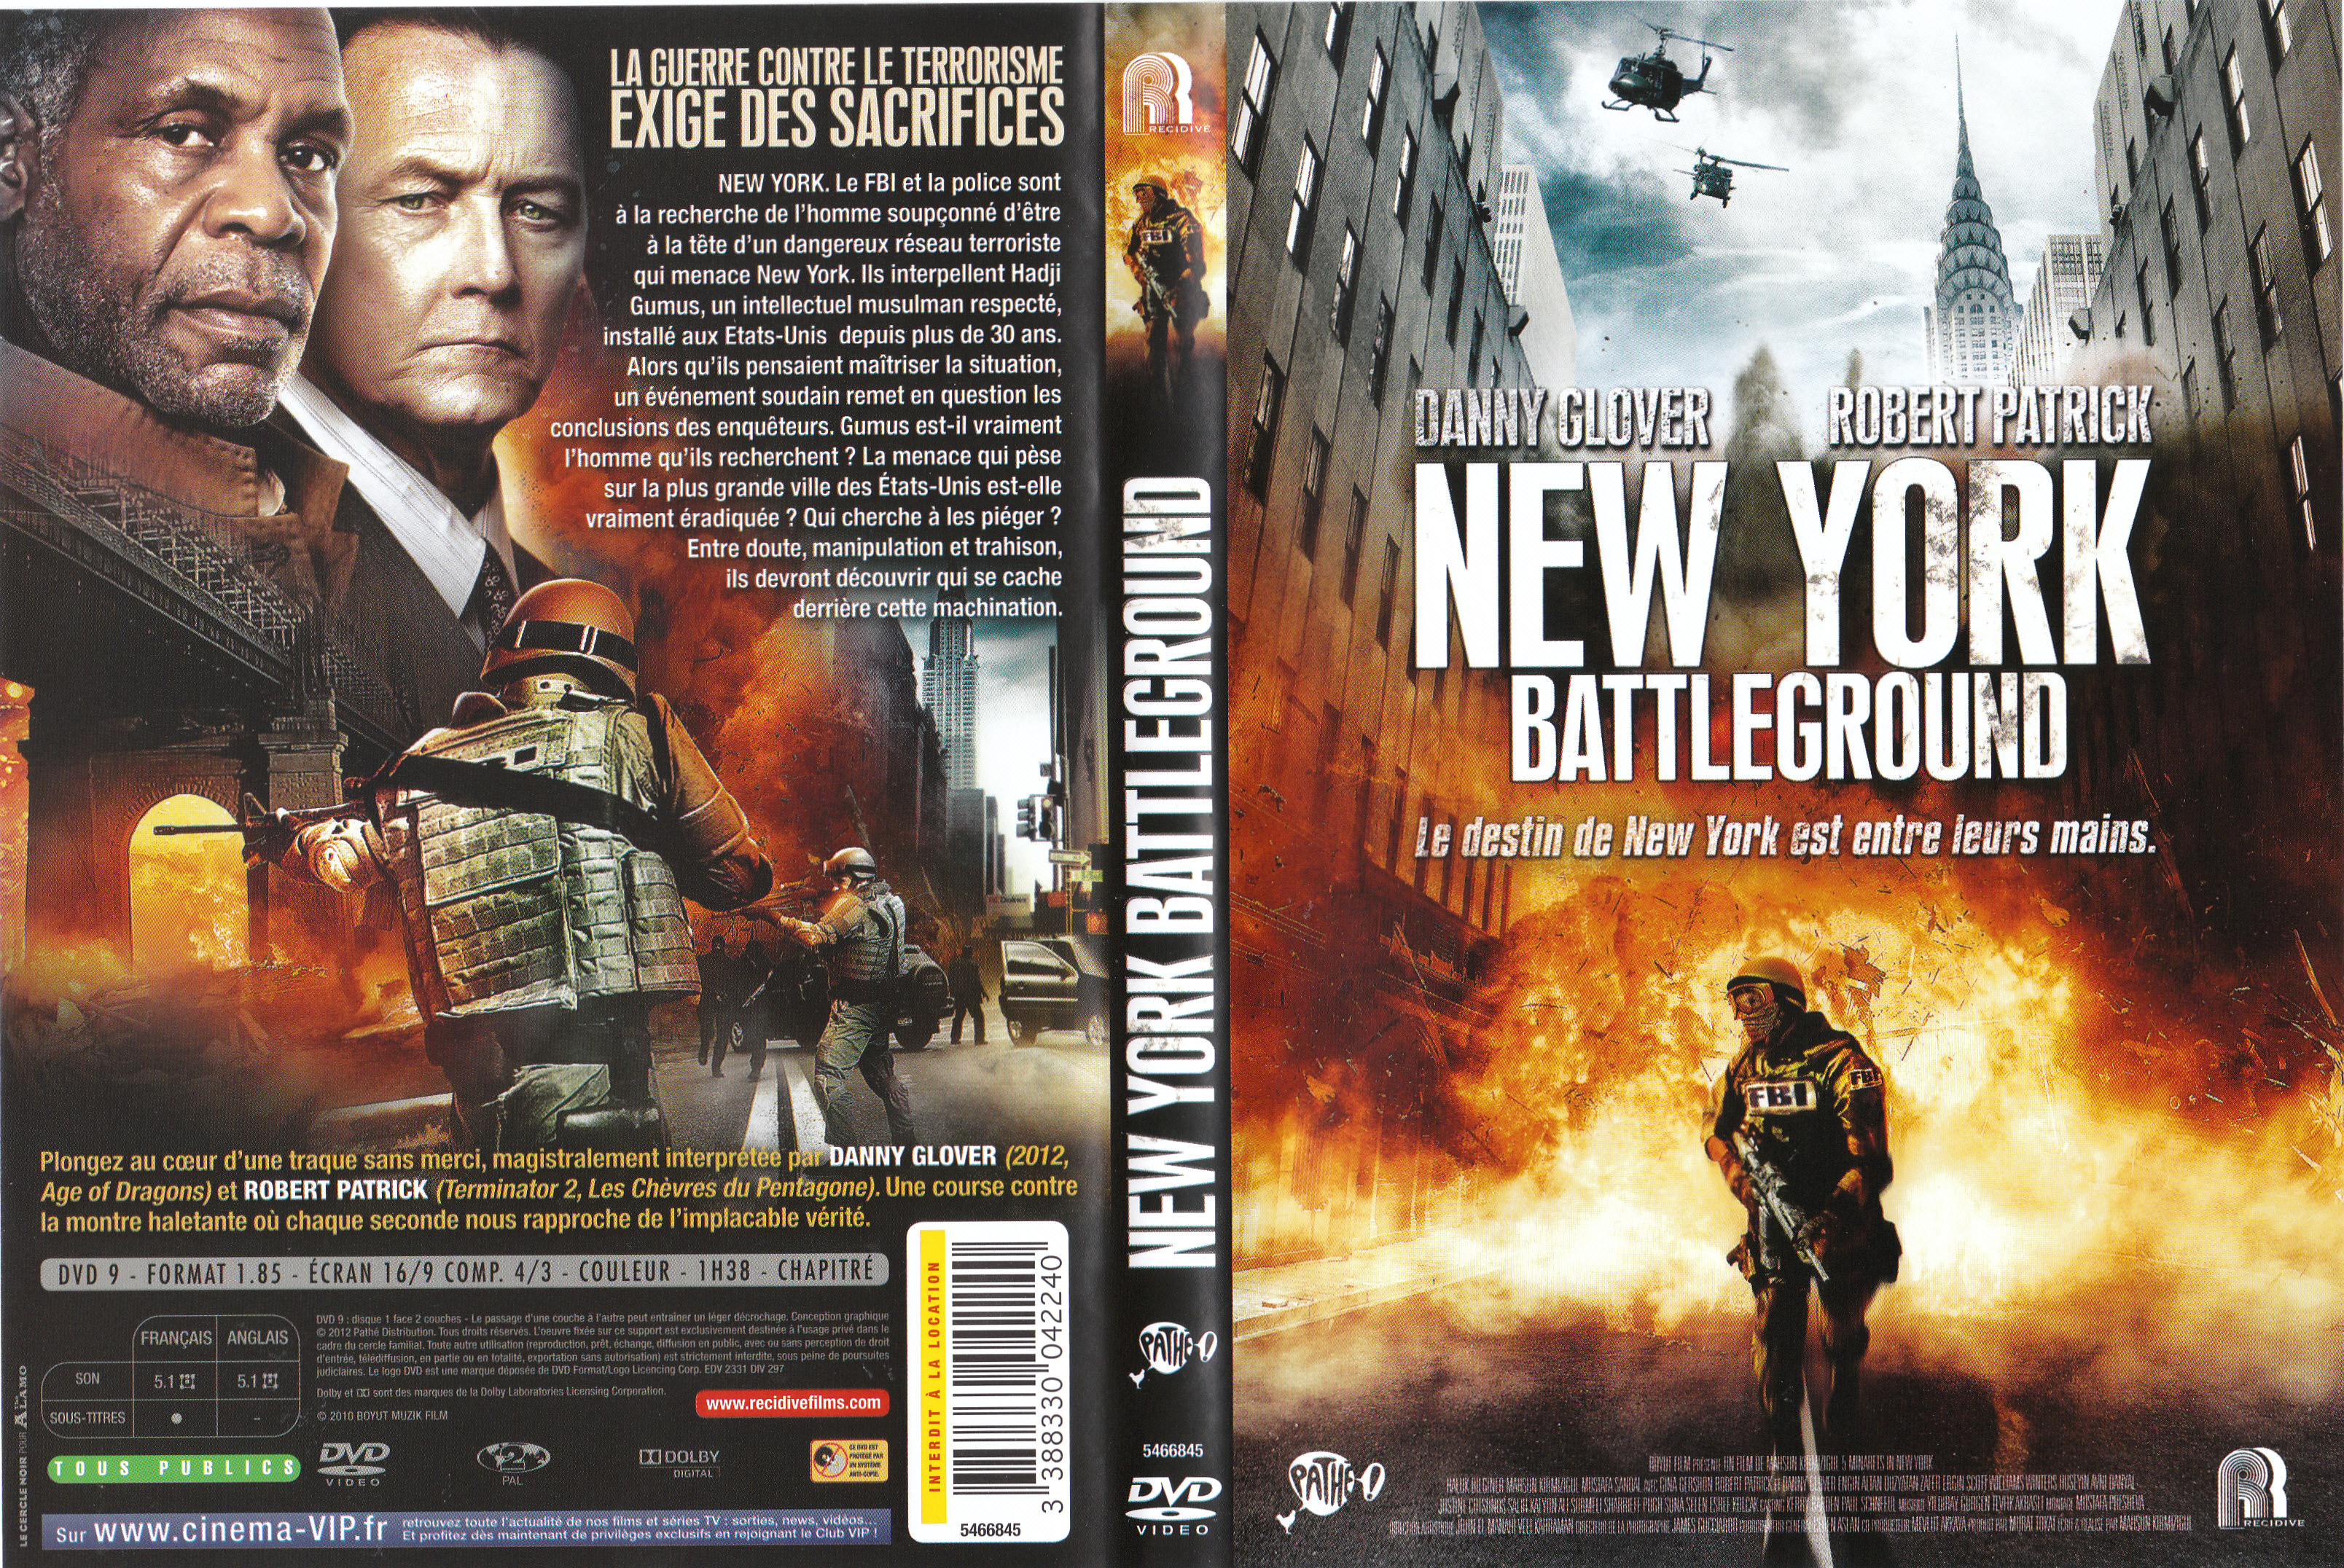 Jaquette DVD New york battleground